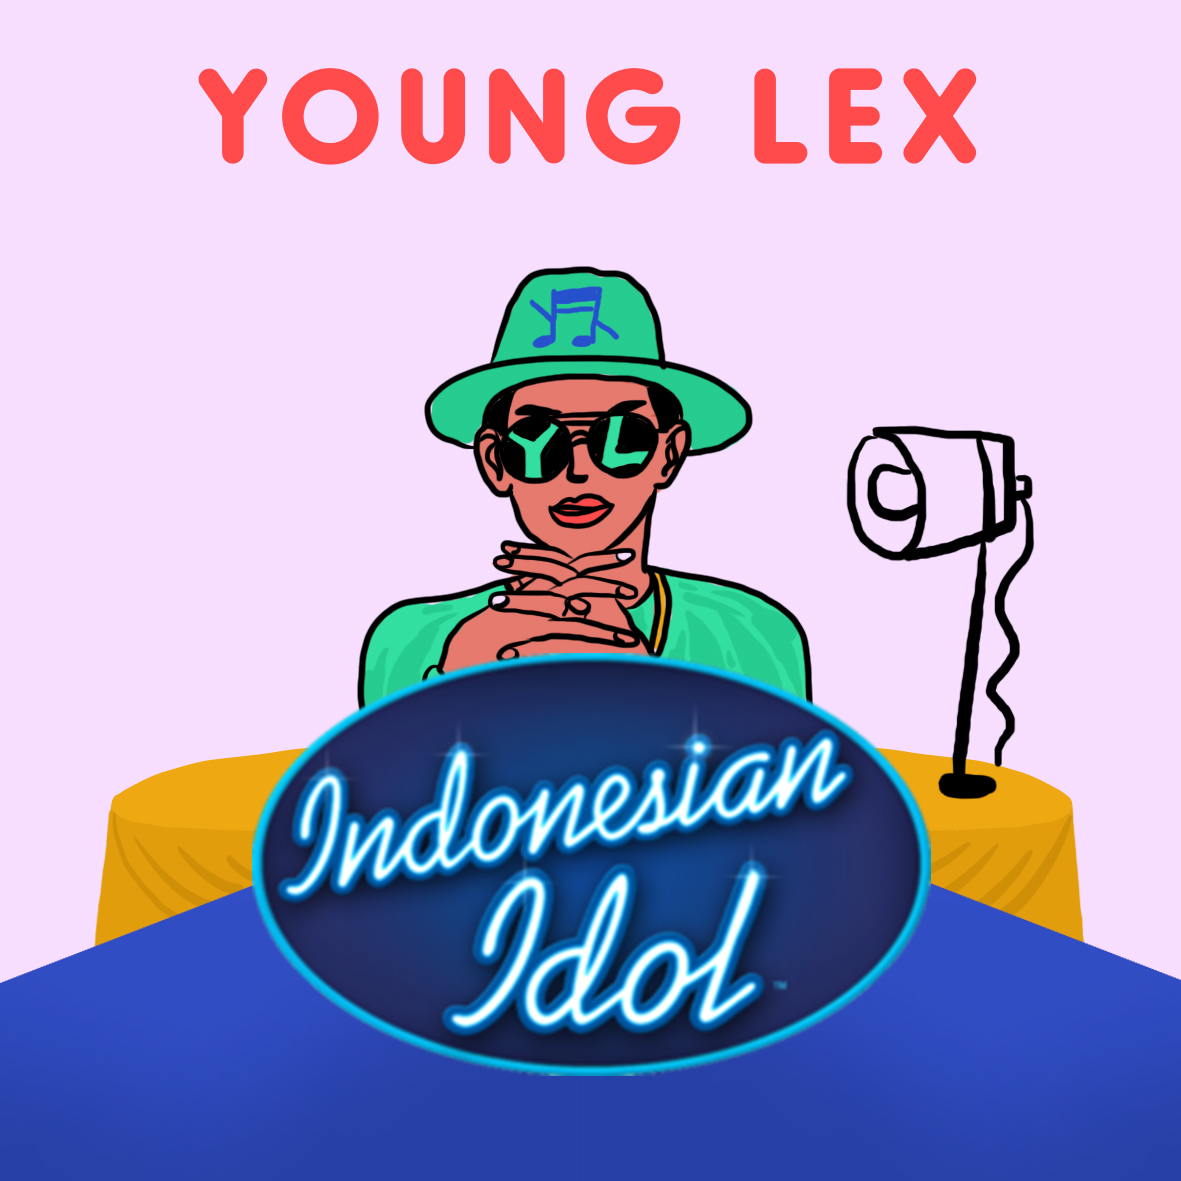 YL, kandidat juri Indonesia Idol paling menarik.